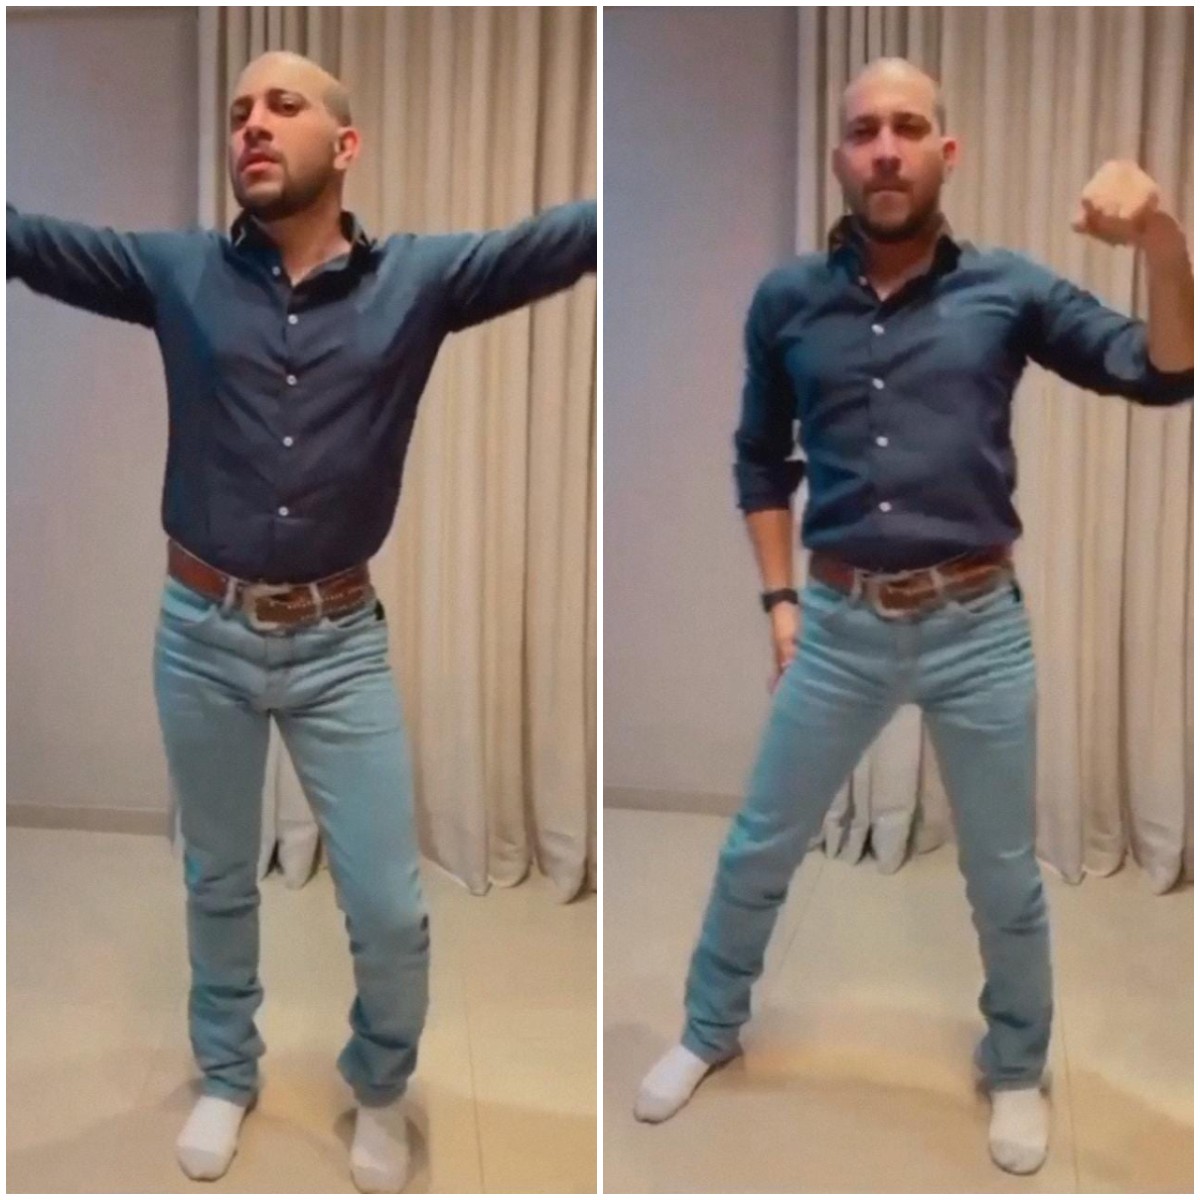 Caio surpreende seguidores ao dançar música de Britney Spears em vídeo (Foto: Reprodução/Instagram)